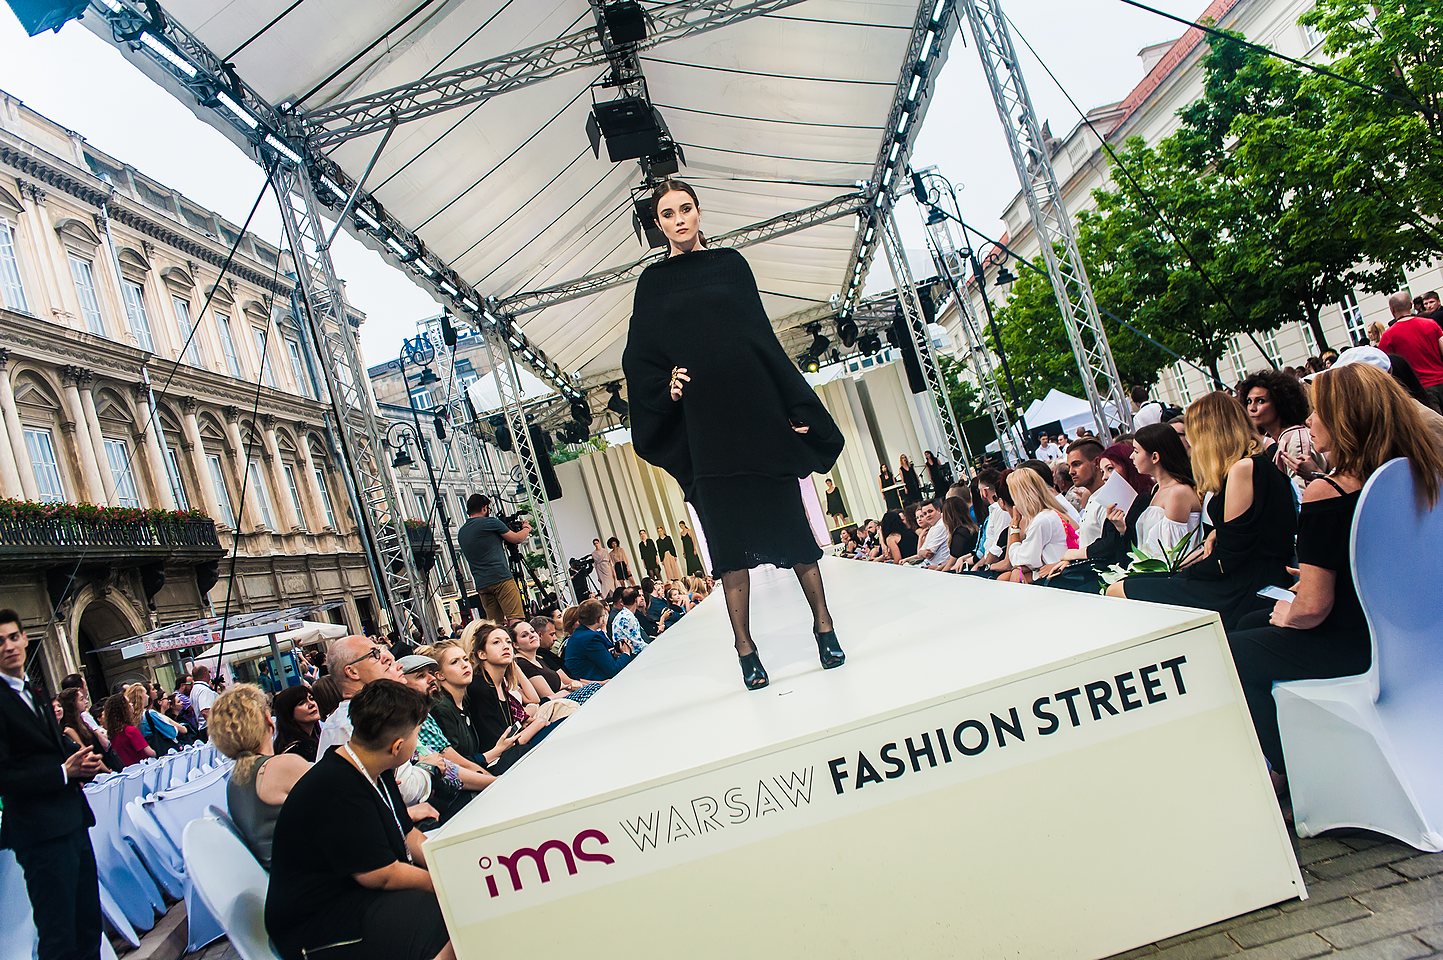 Warsaw Fashion Street 2016 - Zdjęcie 5 z 155